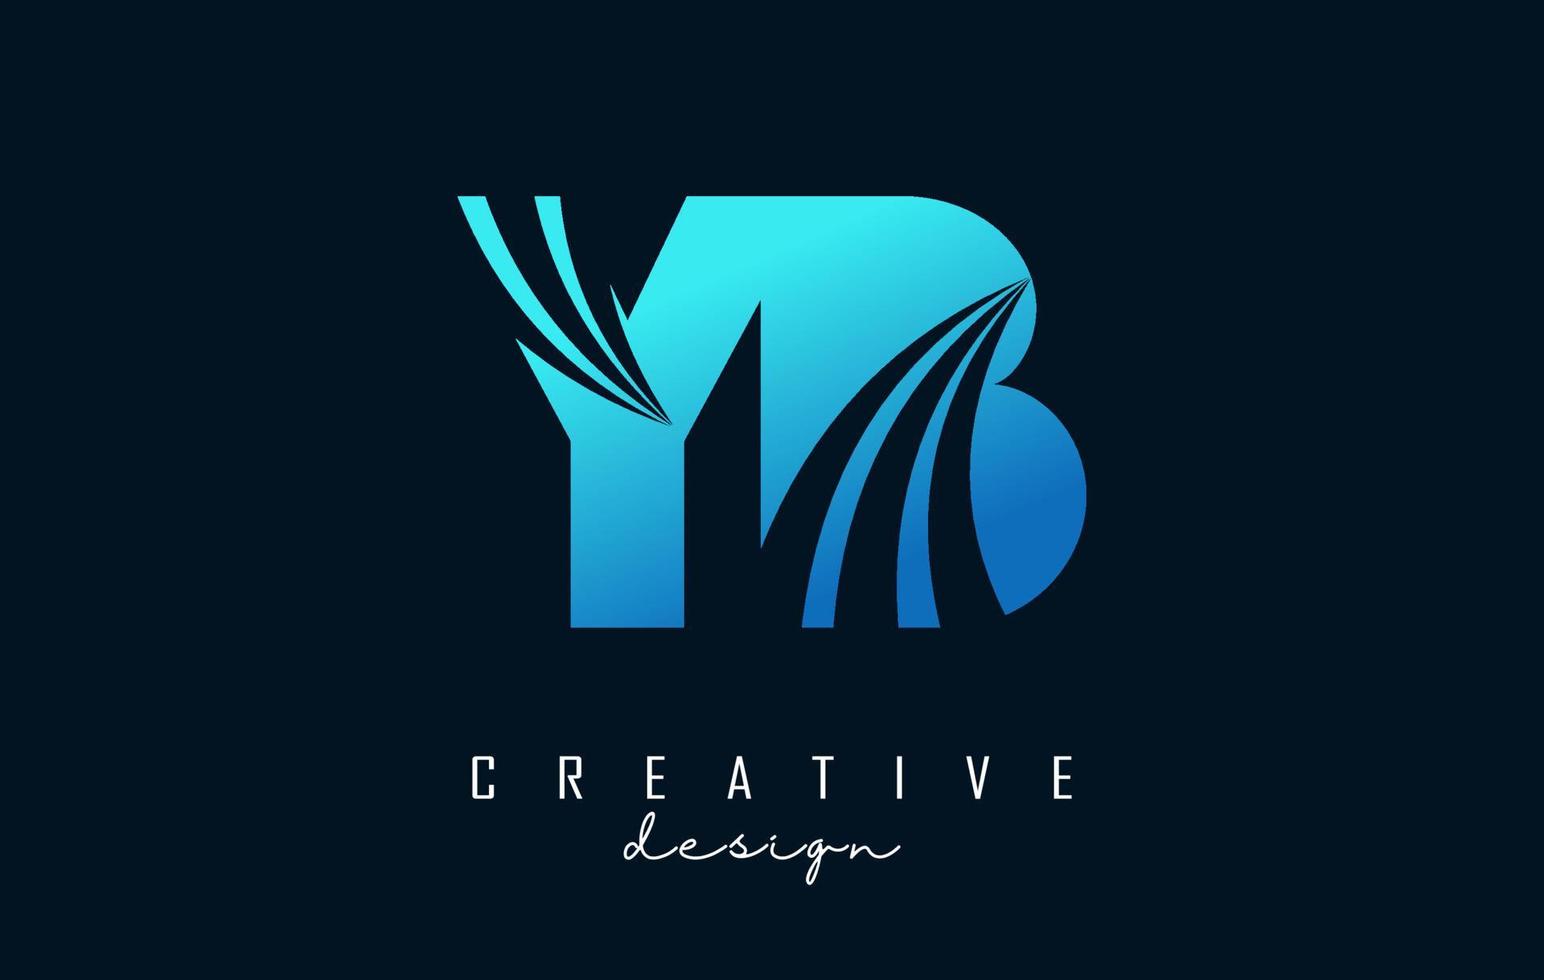 letras azuis criativas yb yb logotipo com linhas principais e design de conceito de estrada. letras com desenho geométrico. vetor